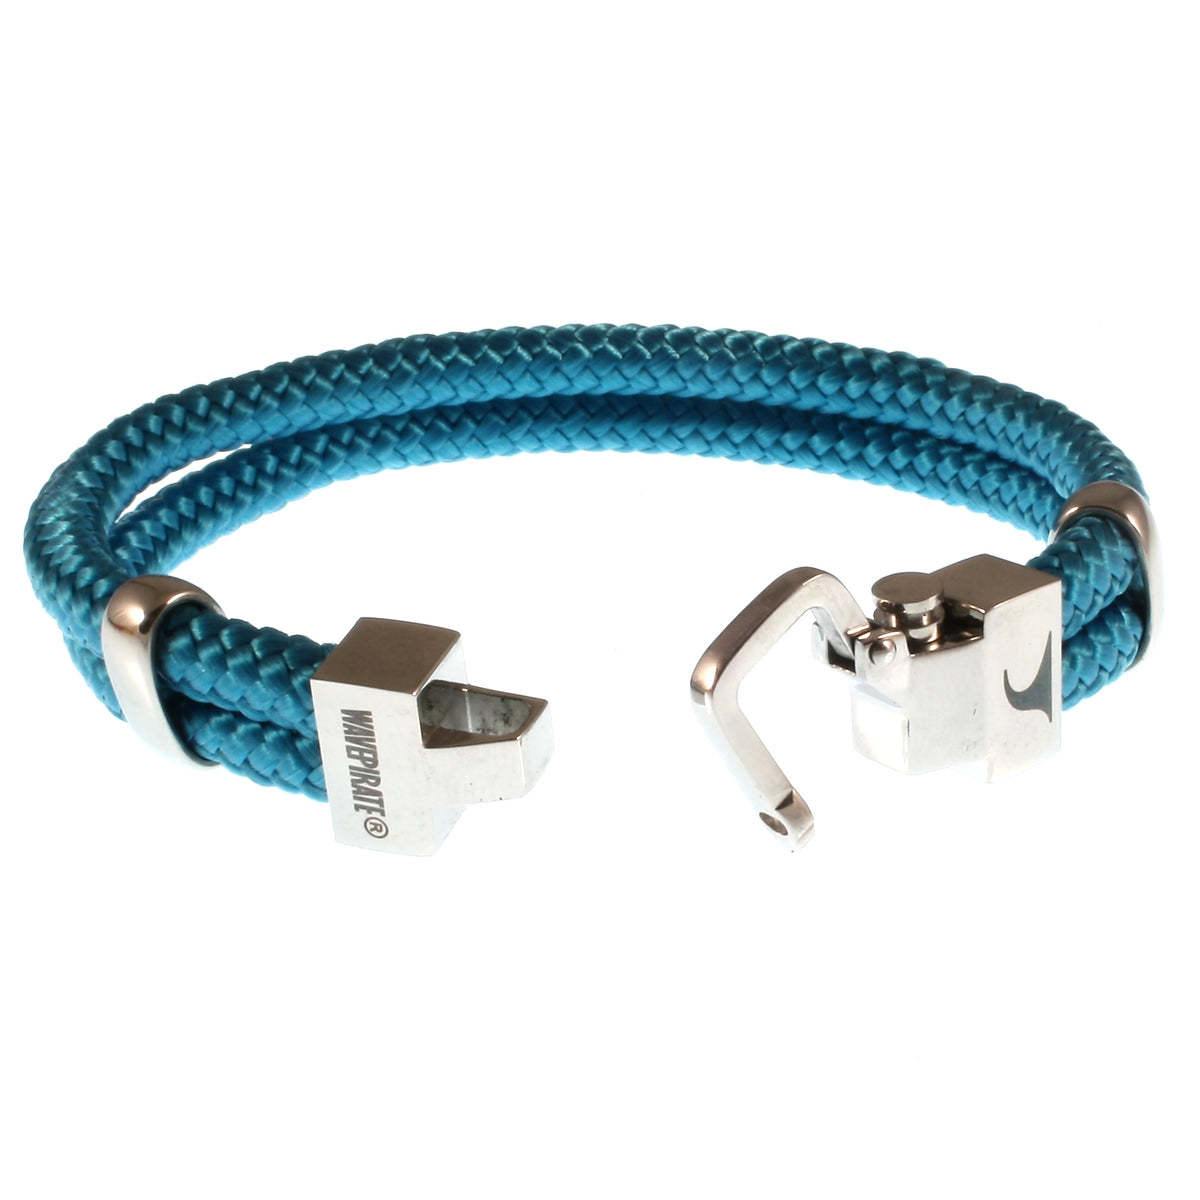 Herren-Segeltau-Armband-Turn-blau-geflochten-Edelstahlverschluss-offen-wavepirate-shop-st